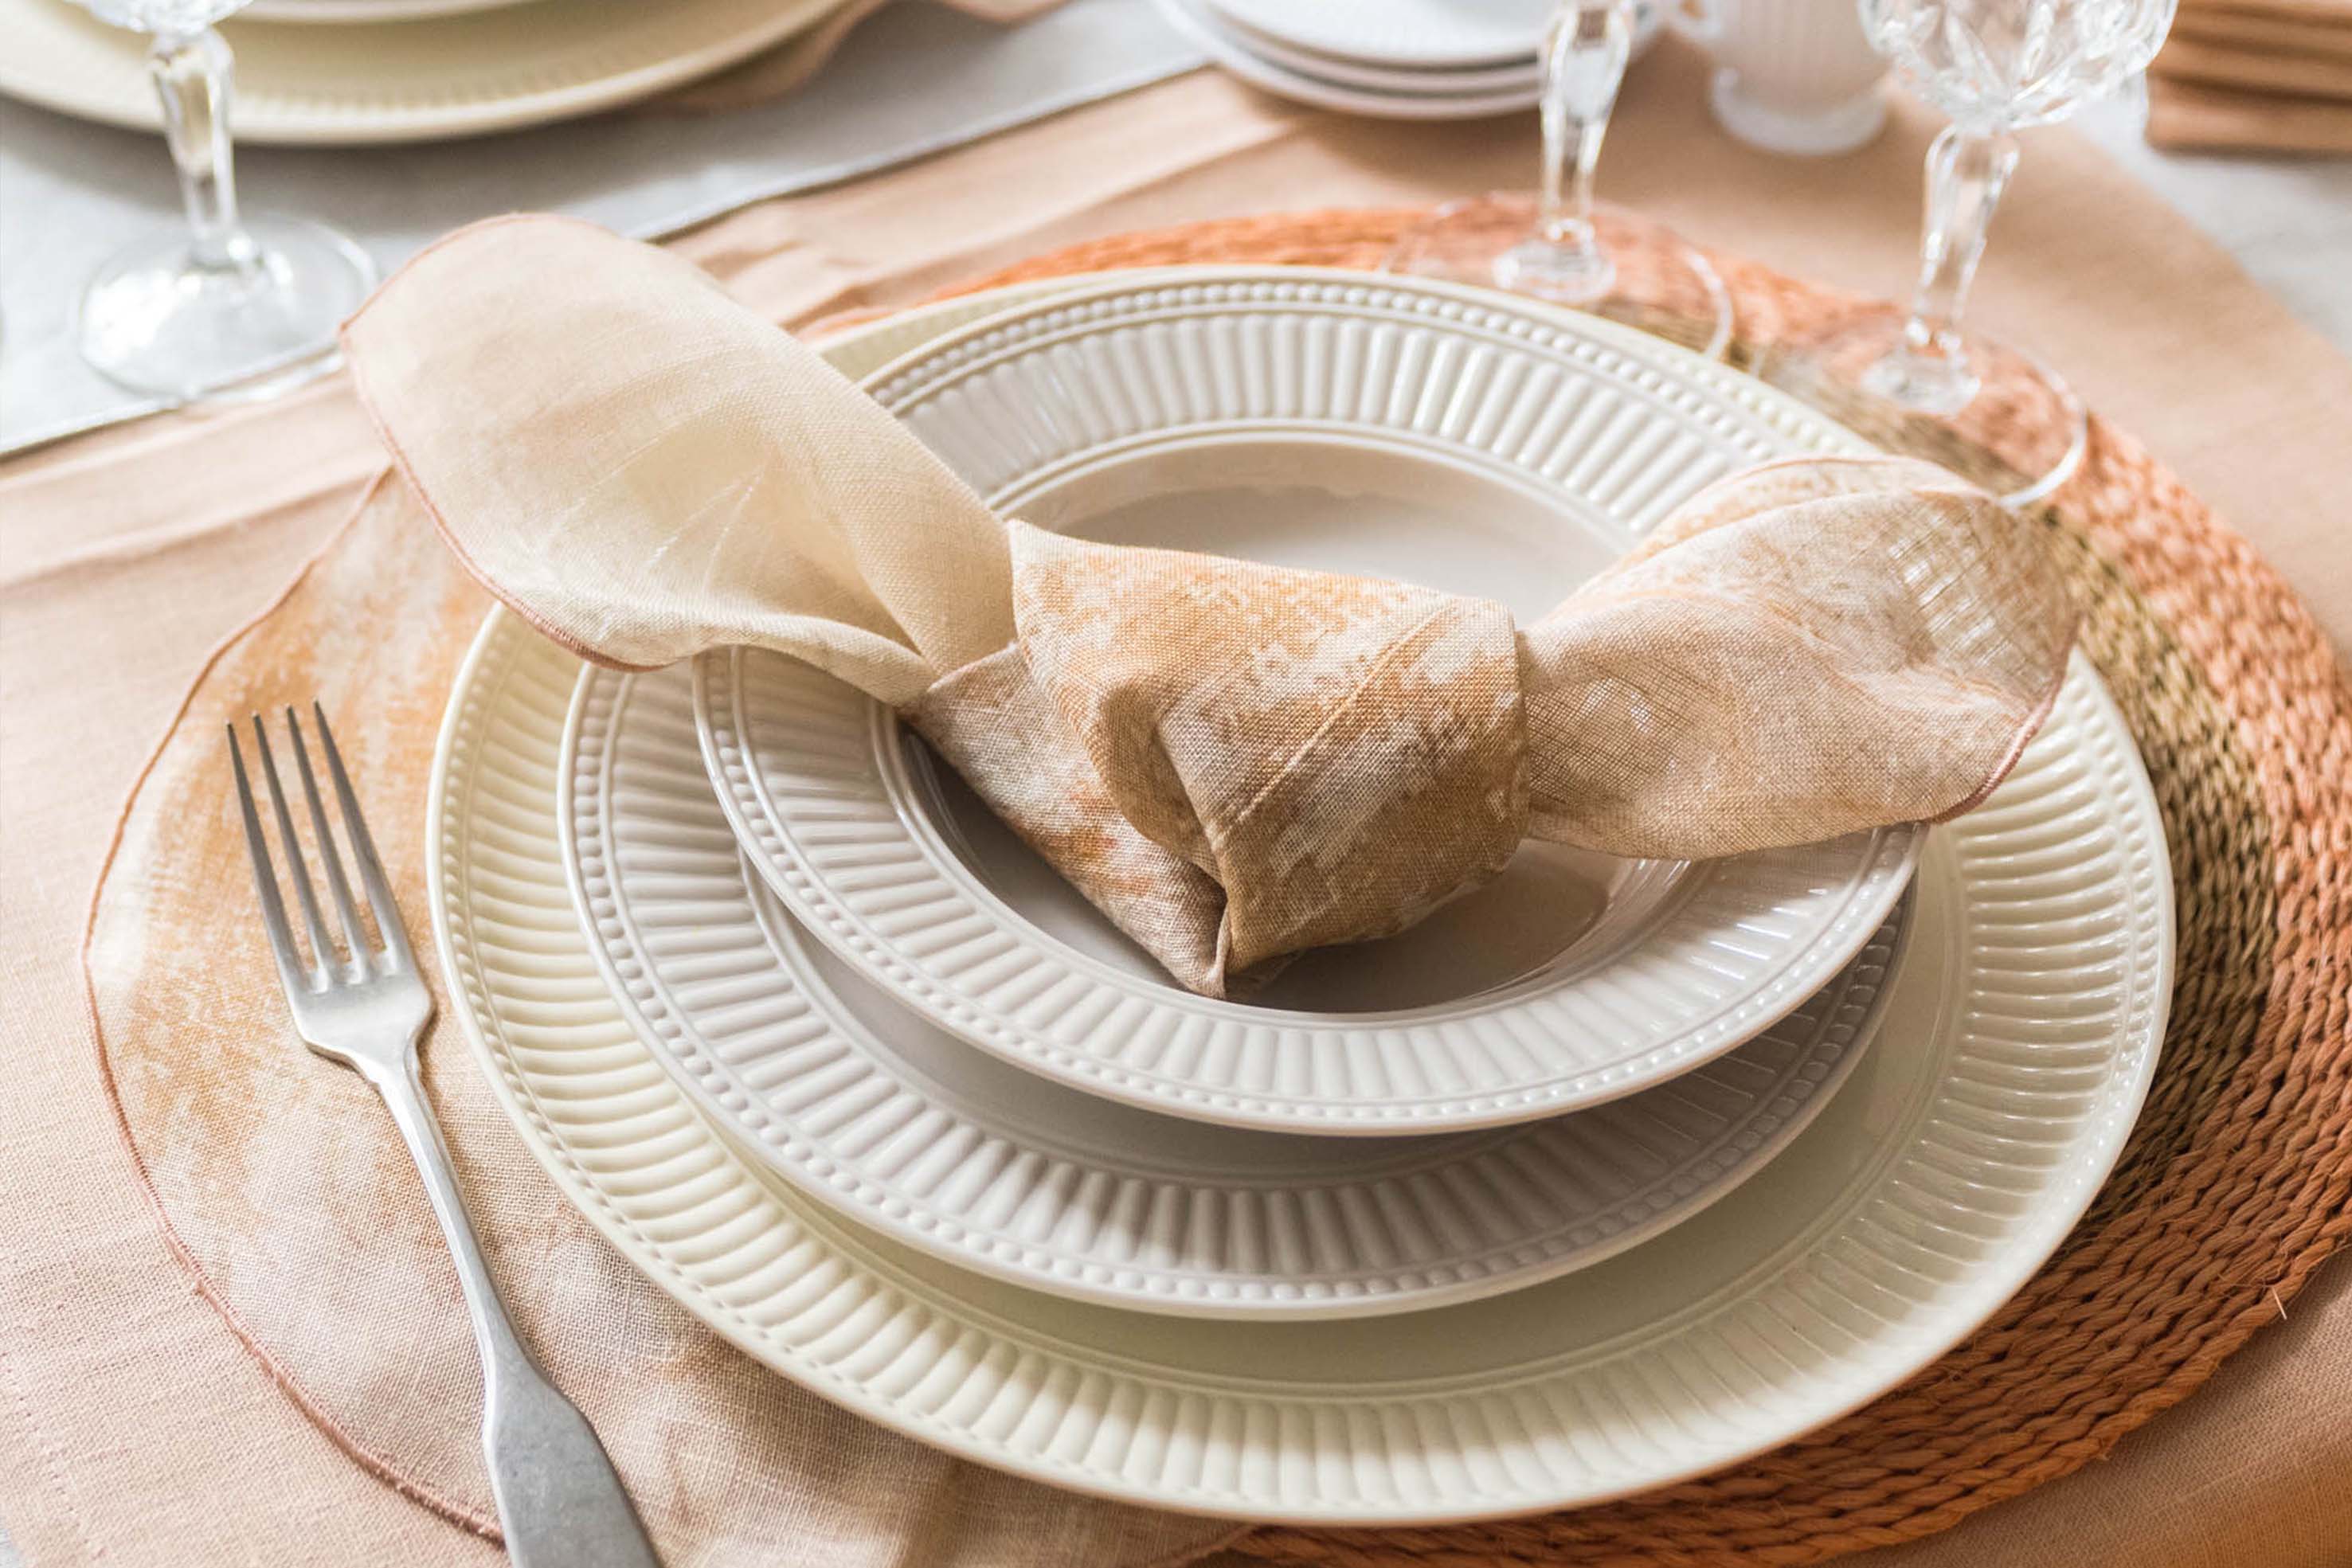 Porcellana, ceramica o melamina: come scegliere i piatti giusti? 